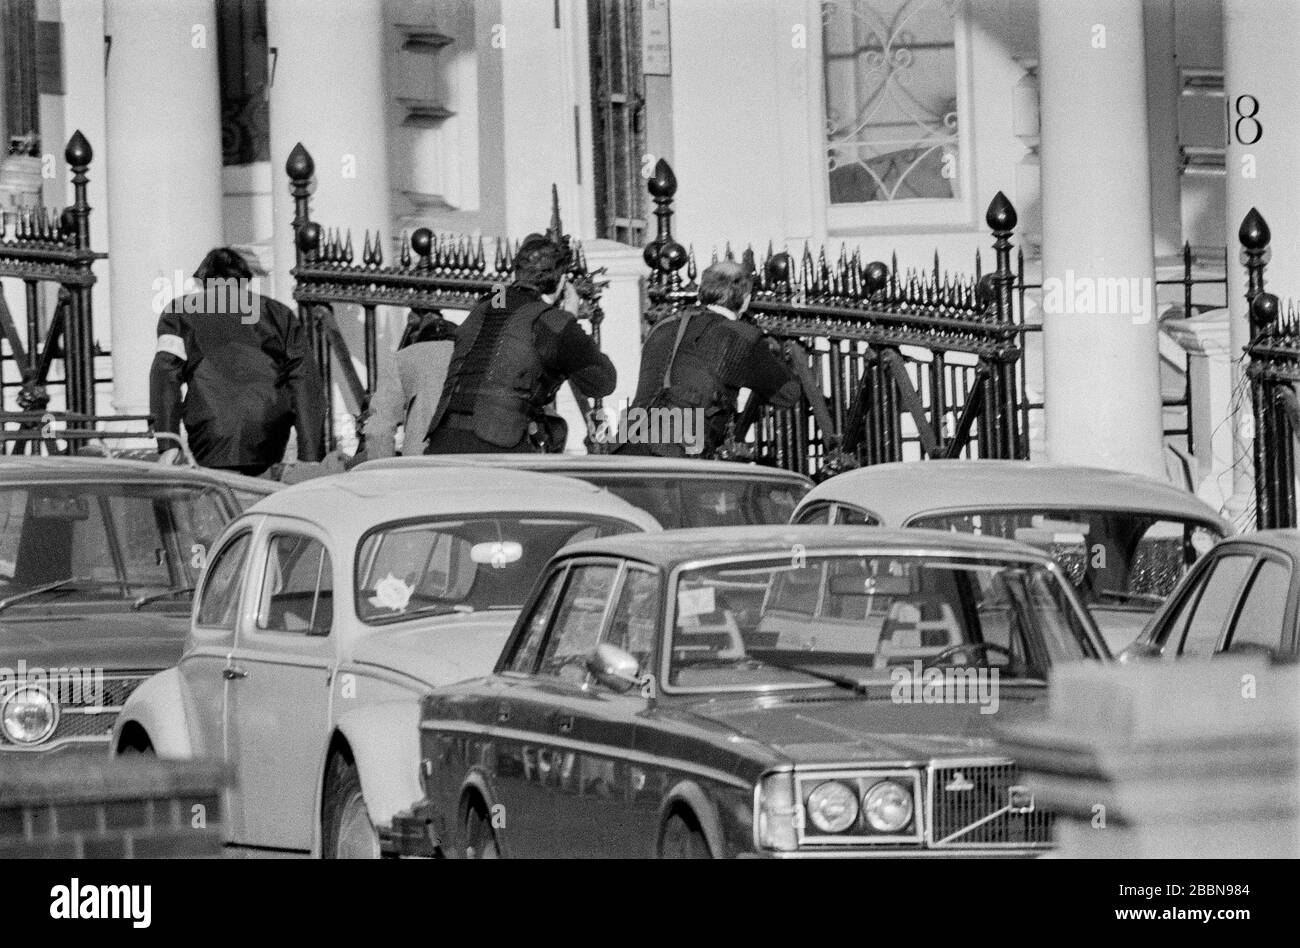 Am 5. Mai 1980 stürmte das Spezialeinsatzteam der SAS British Army die iranische Botschaft in London, um 26 Geiseln zu befreien, die von einer arabischen Terrororganisation namens KSA-Gruppe festgehalten wurden, die sich für die arabische nationale Souveränität einsetzt. Unter den Geiseln befand sich auch der BBC-Tonrecordist SIM Harris, der aus einem Fenster flüchtete und über einen Balkon sprang. Stockfoto